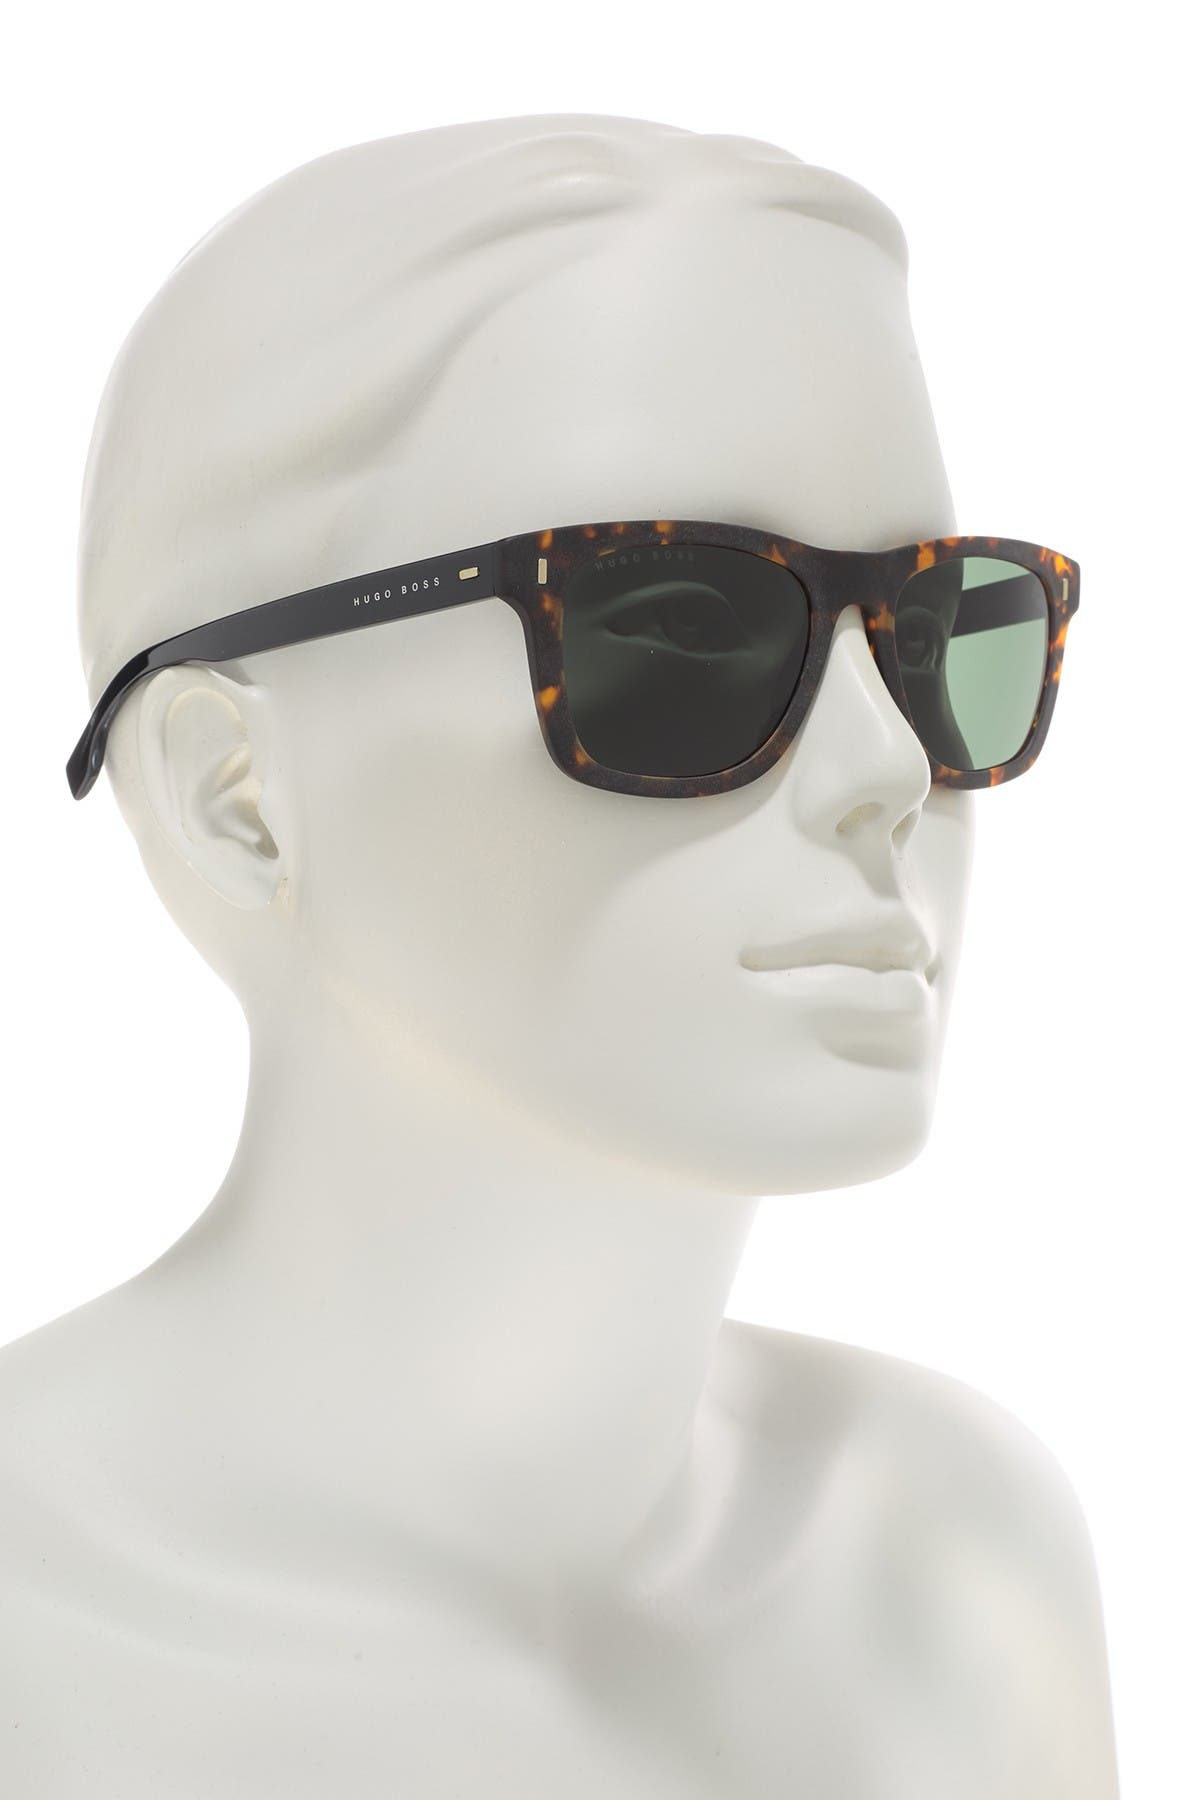 hugo boss sunglasses nordstrom rack